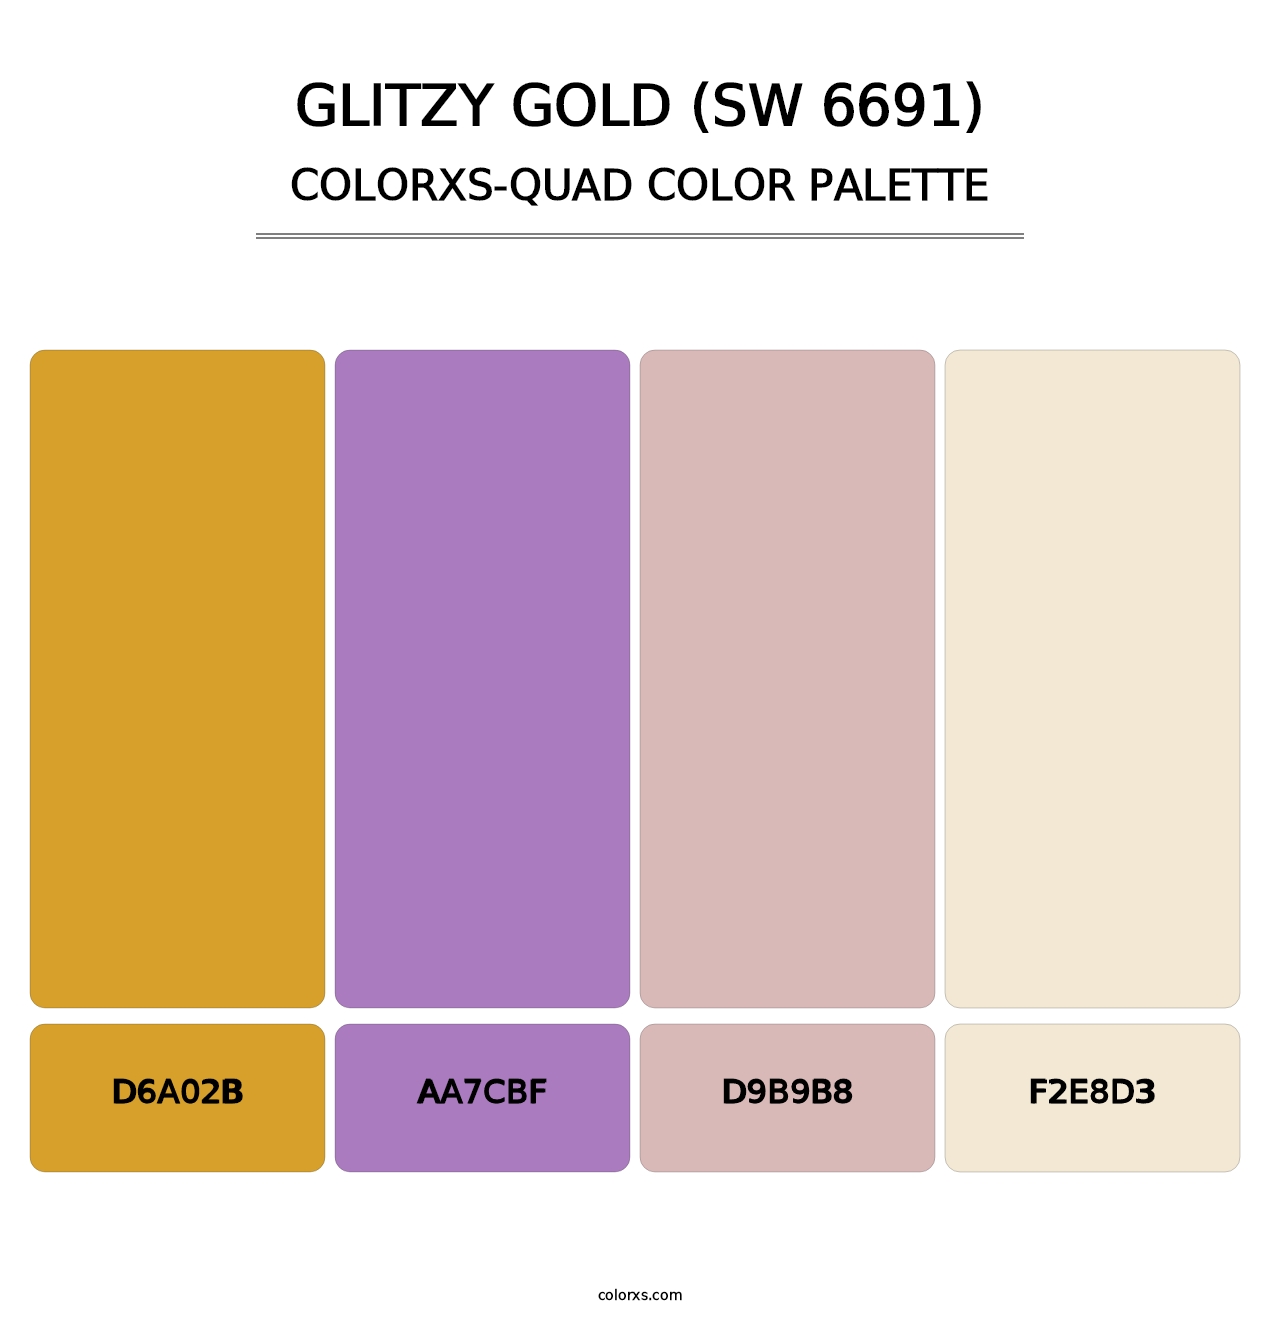 Glitzy Gold (SW 6691) - Colorxs Quad Palette